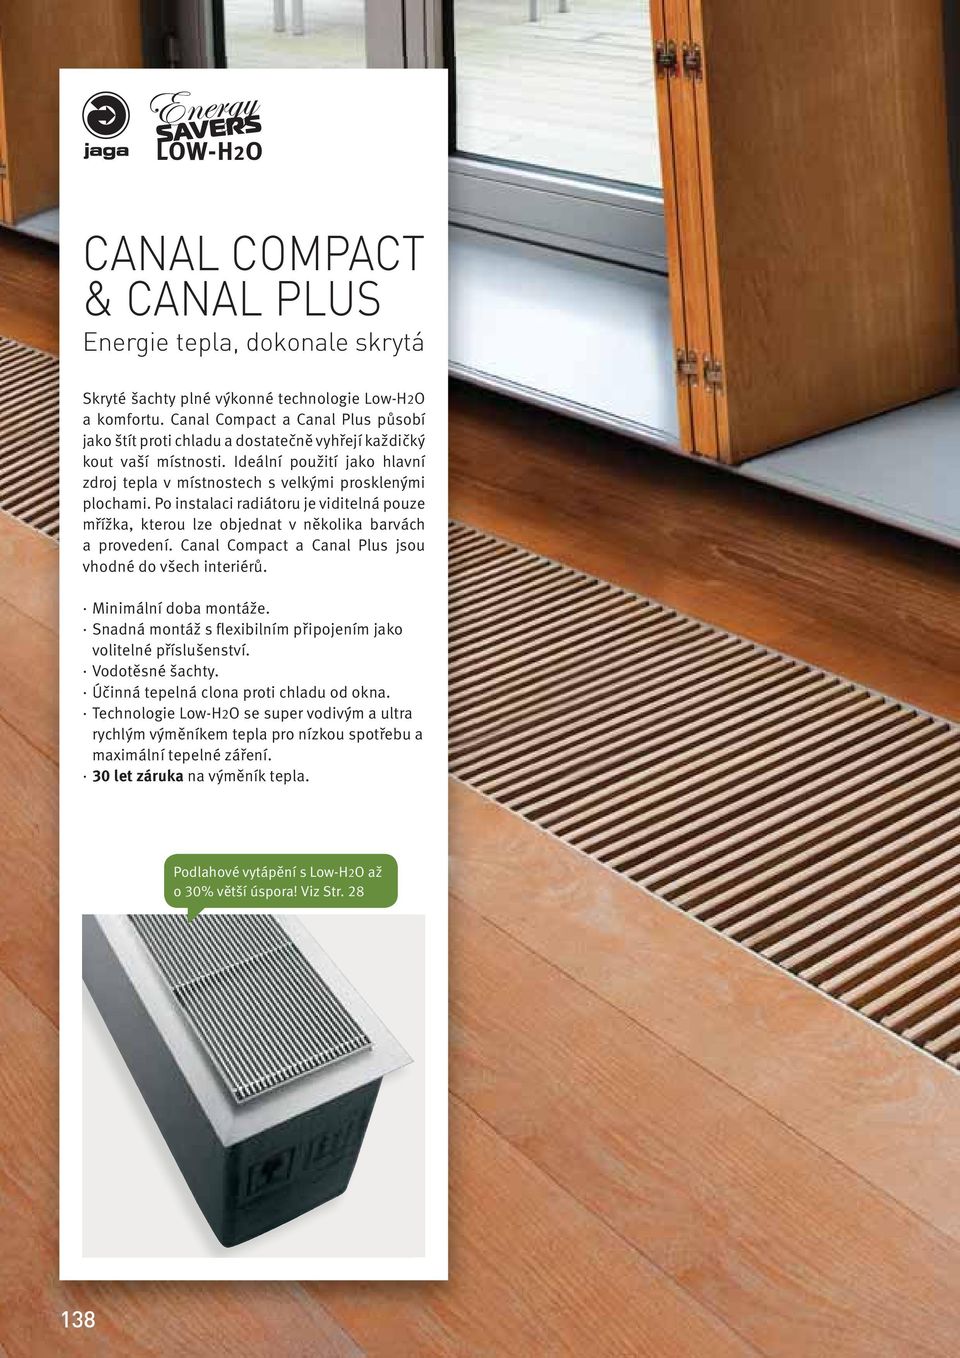 Po instalaci radiátoru je viditelná pouze mřížka, kterou lze objednat v několika barvách a provedení. Canal Compact a Canal Plus jsou vhodné do všech interiérů. Minimální doba montáže.